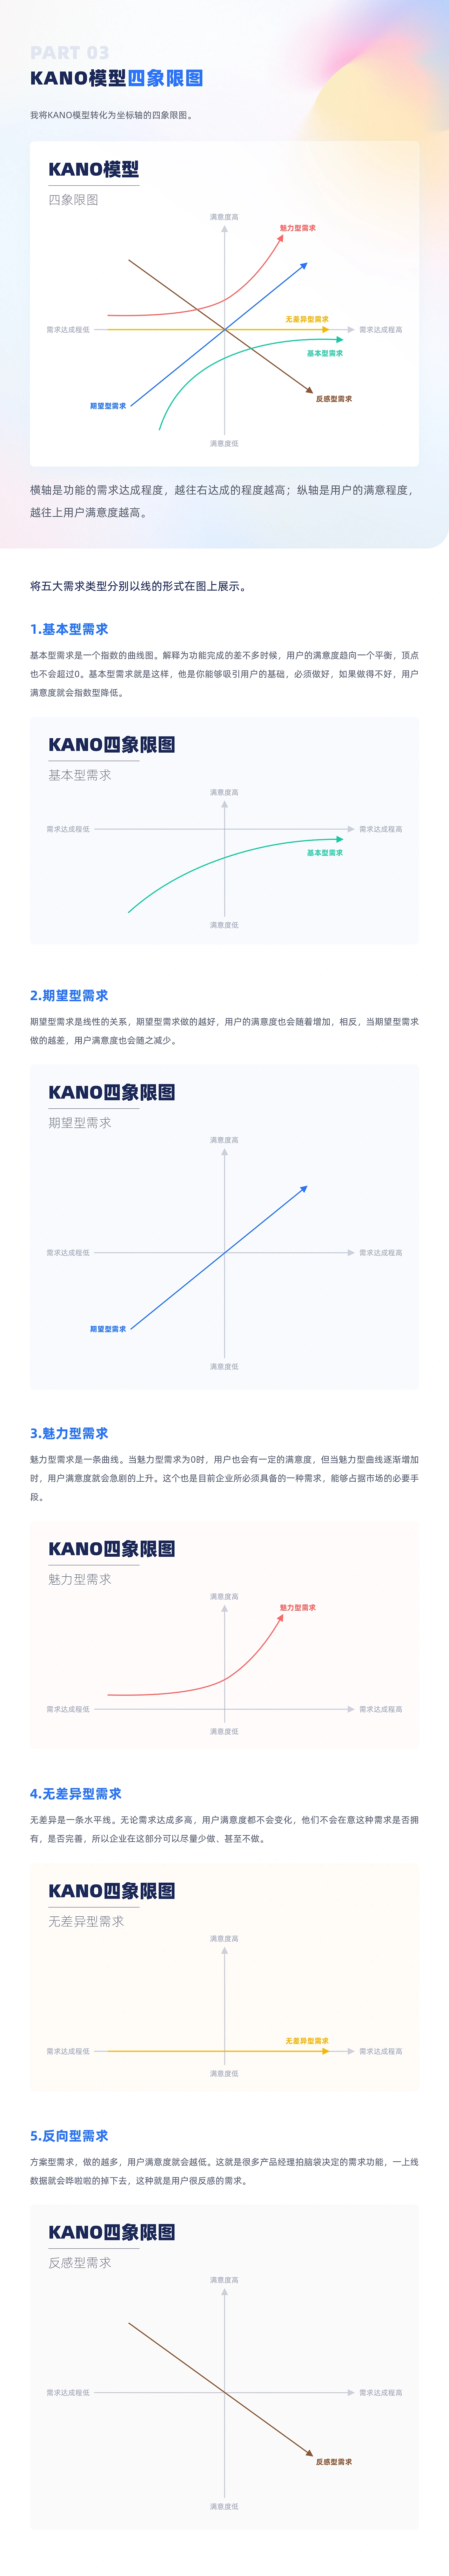 产品需求分析为什么要用 KANO模型？